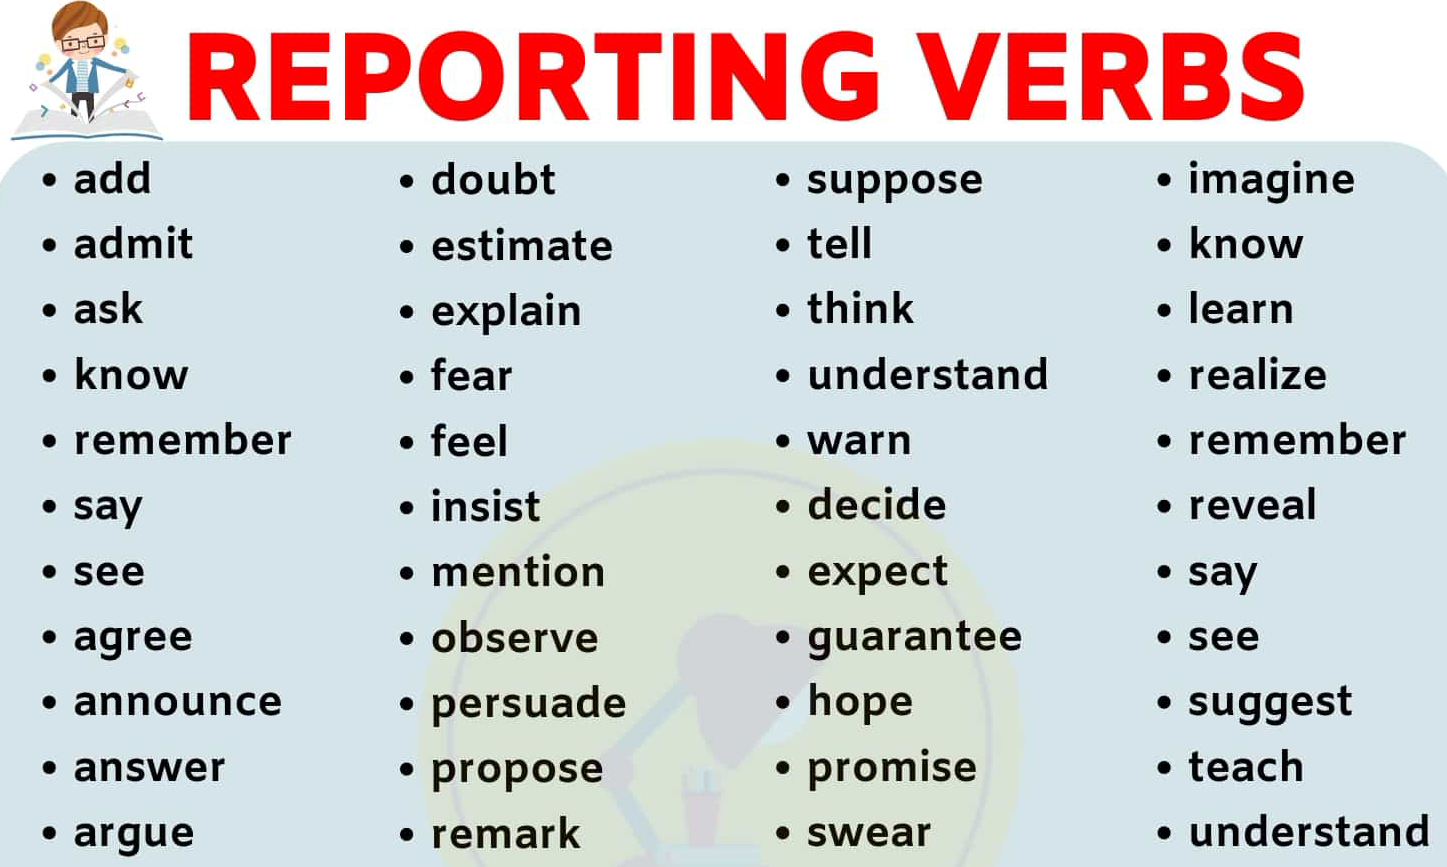 Tổng hợp động từ tường thuật (reporting verbs) trong câu gián tiếp